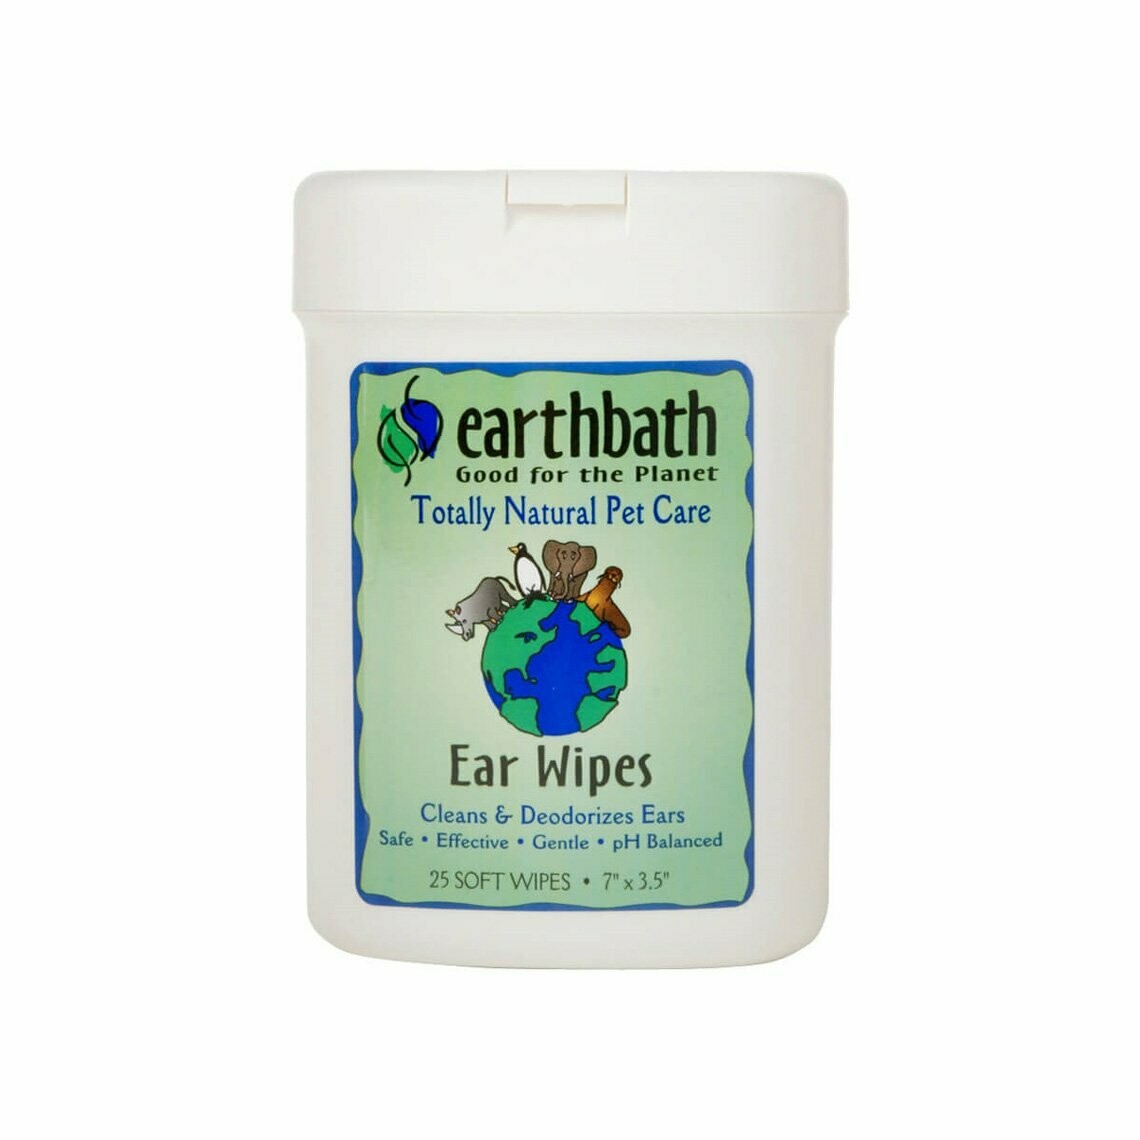 EBTH EAR WIPES 25CT